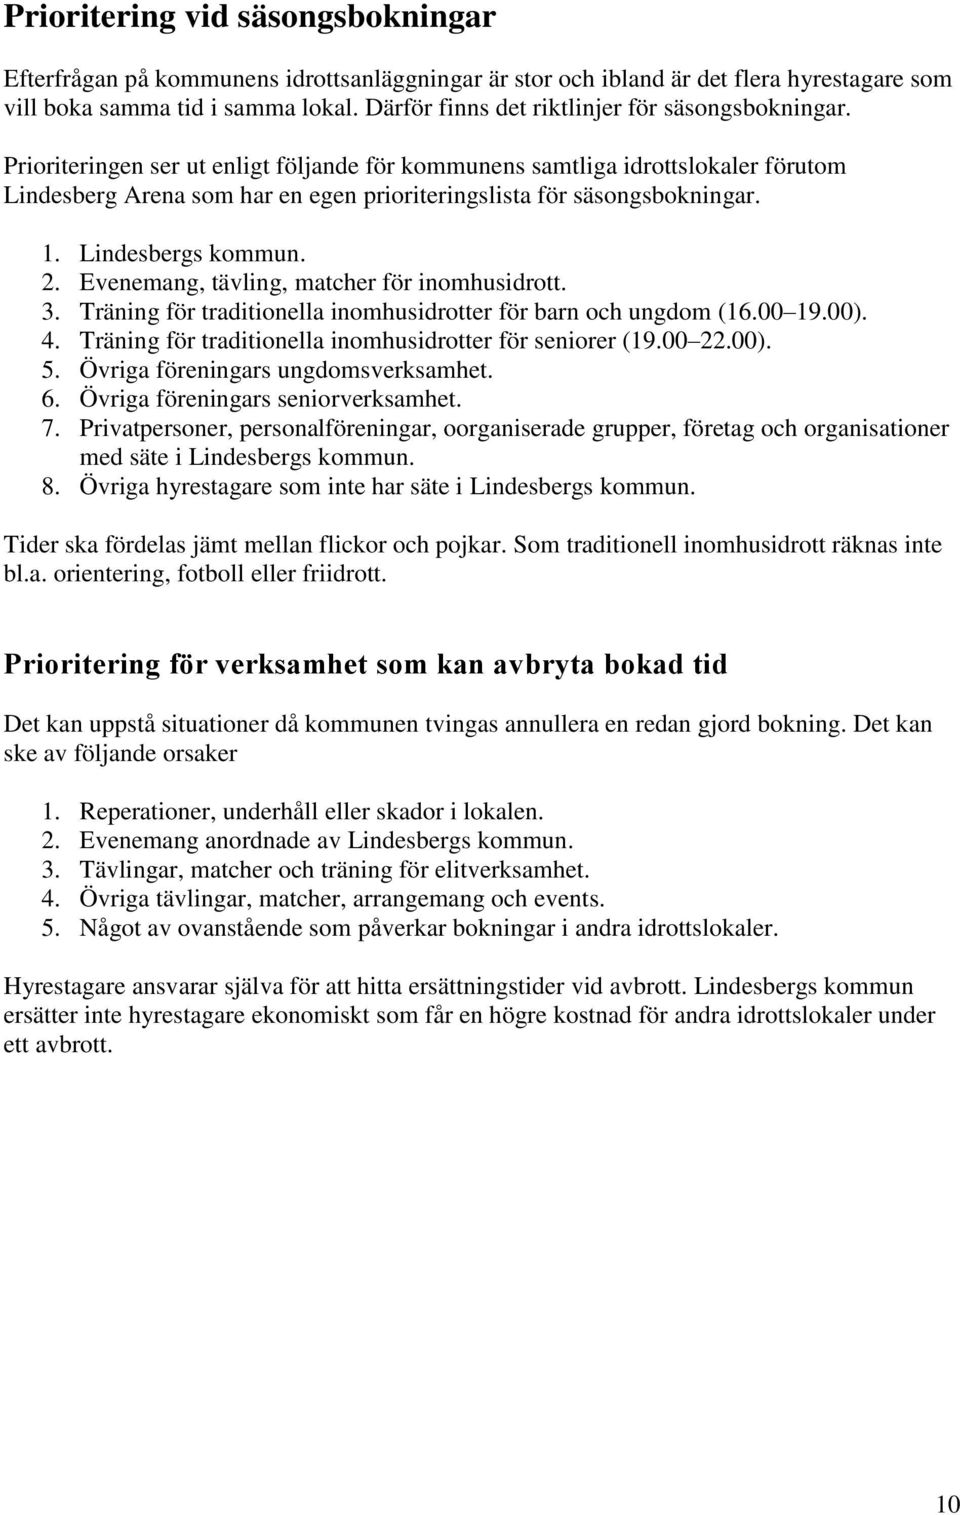 Prioriteringen ser ut enligt följande för kommunens samtliga idrottslokaler förutom Lindesberg Arena som har en egen prioriteringslista för säsongsbokningar. 1. Lindesbergs kommun. 2.